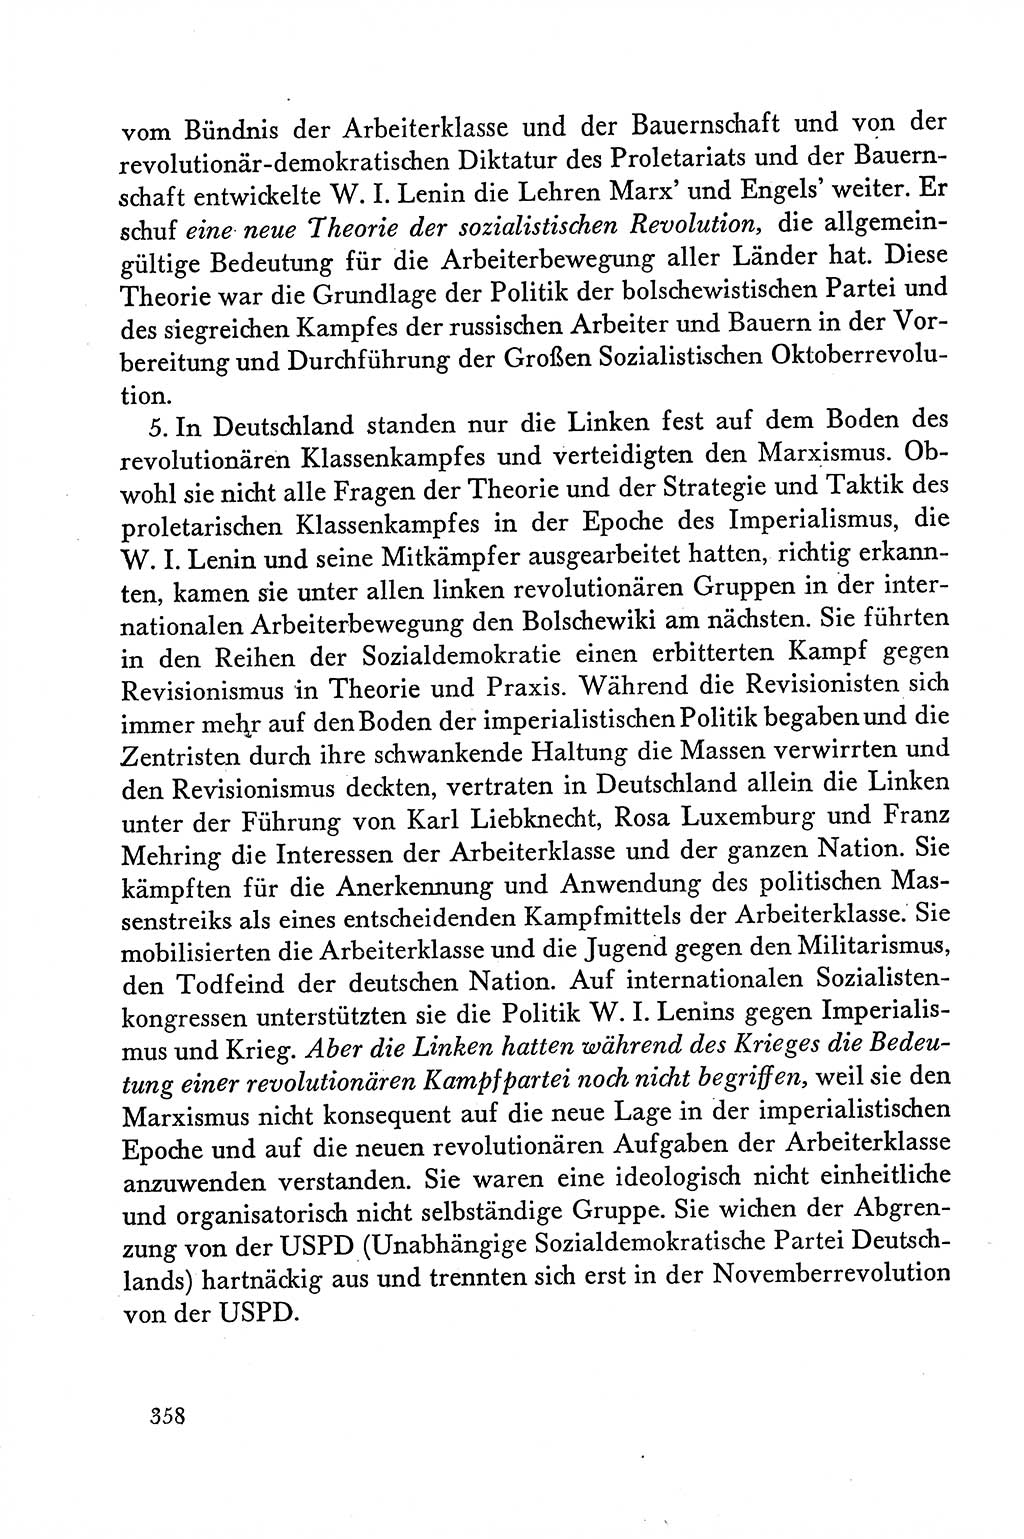 Dokumente der Sozialistischen Einheitspartei Deutschlands (SED) [Deutsche Demokratische Republik (DDR)] 1958-1959, Seite 358 (Dok. SED DDR 1958-1959, S. 358)